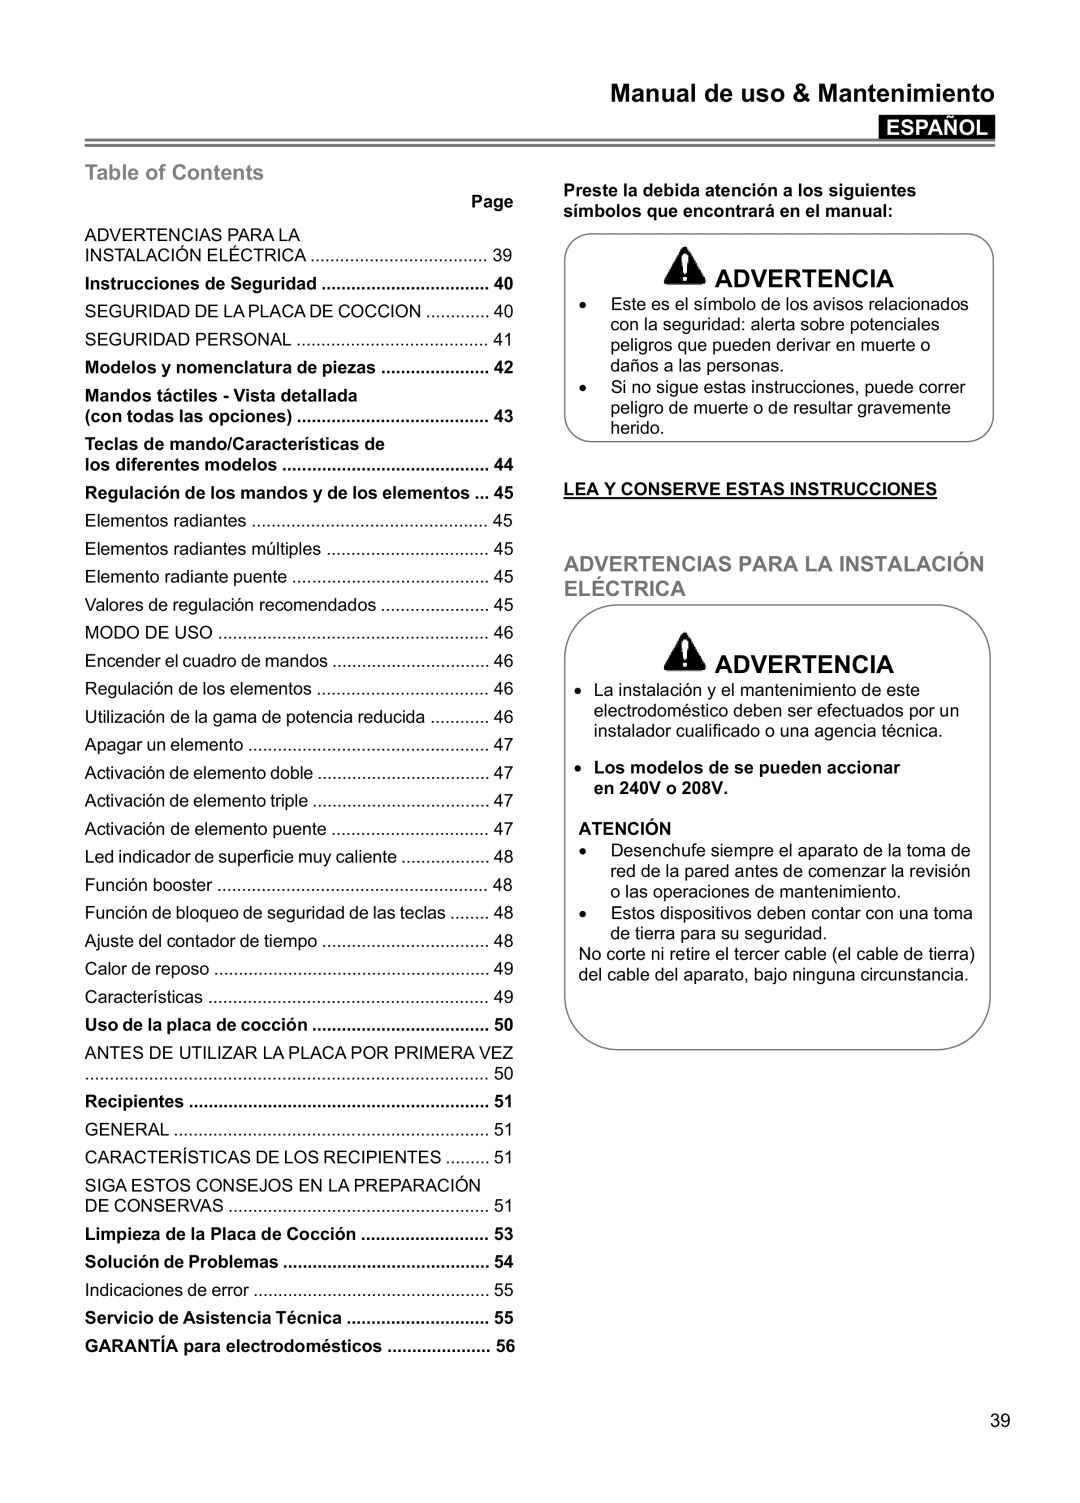 Blomberg CTE 30400, CTE 36500 Manual de uso & Mantenimiento, Español, Advertencias Para La Instalación Eléctrica 